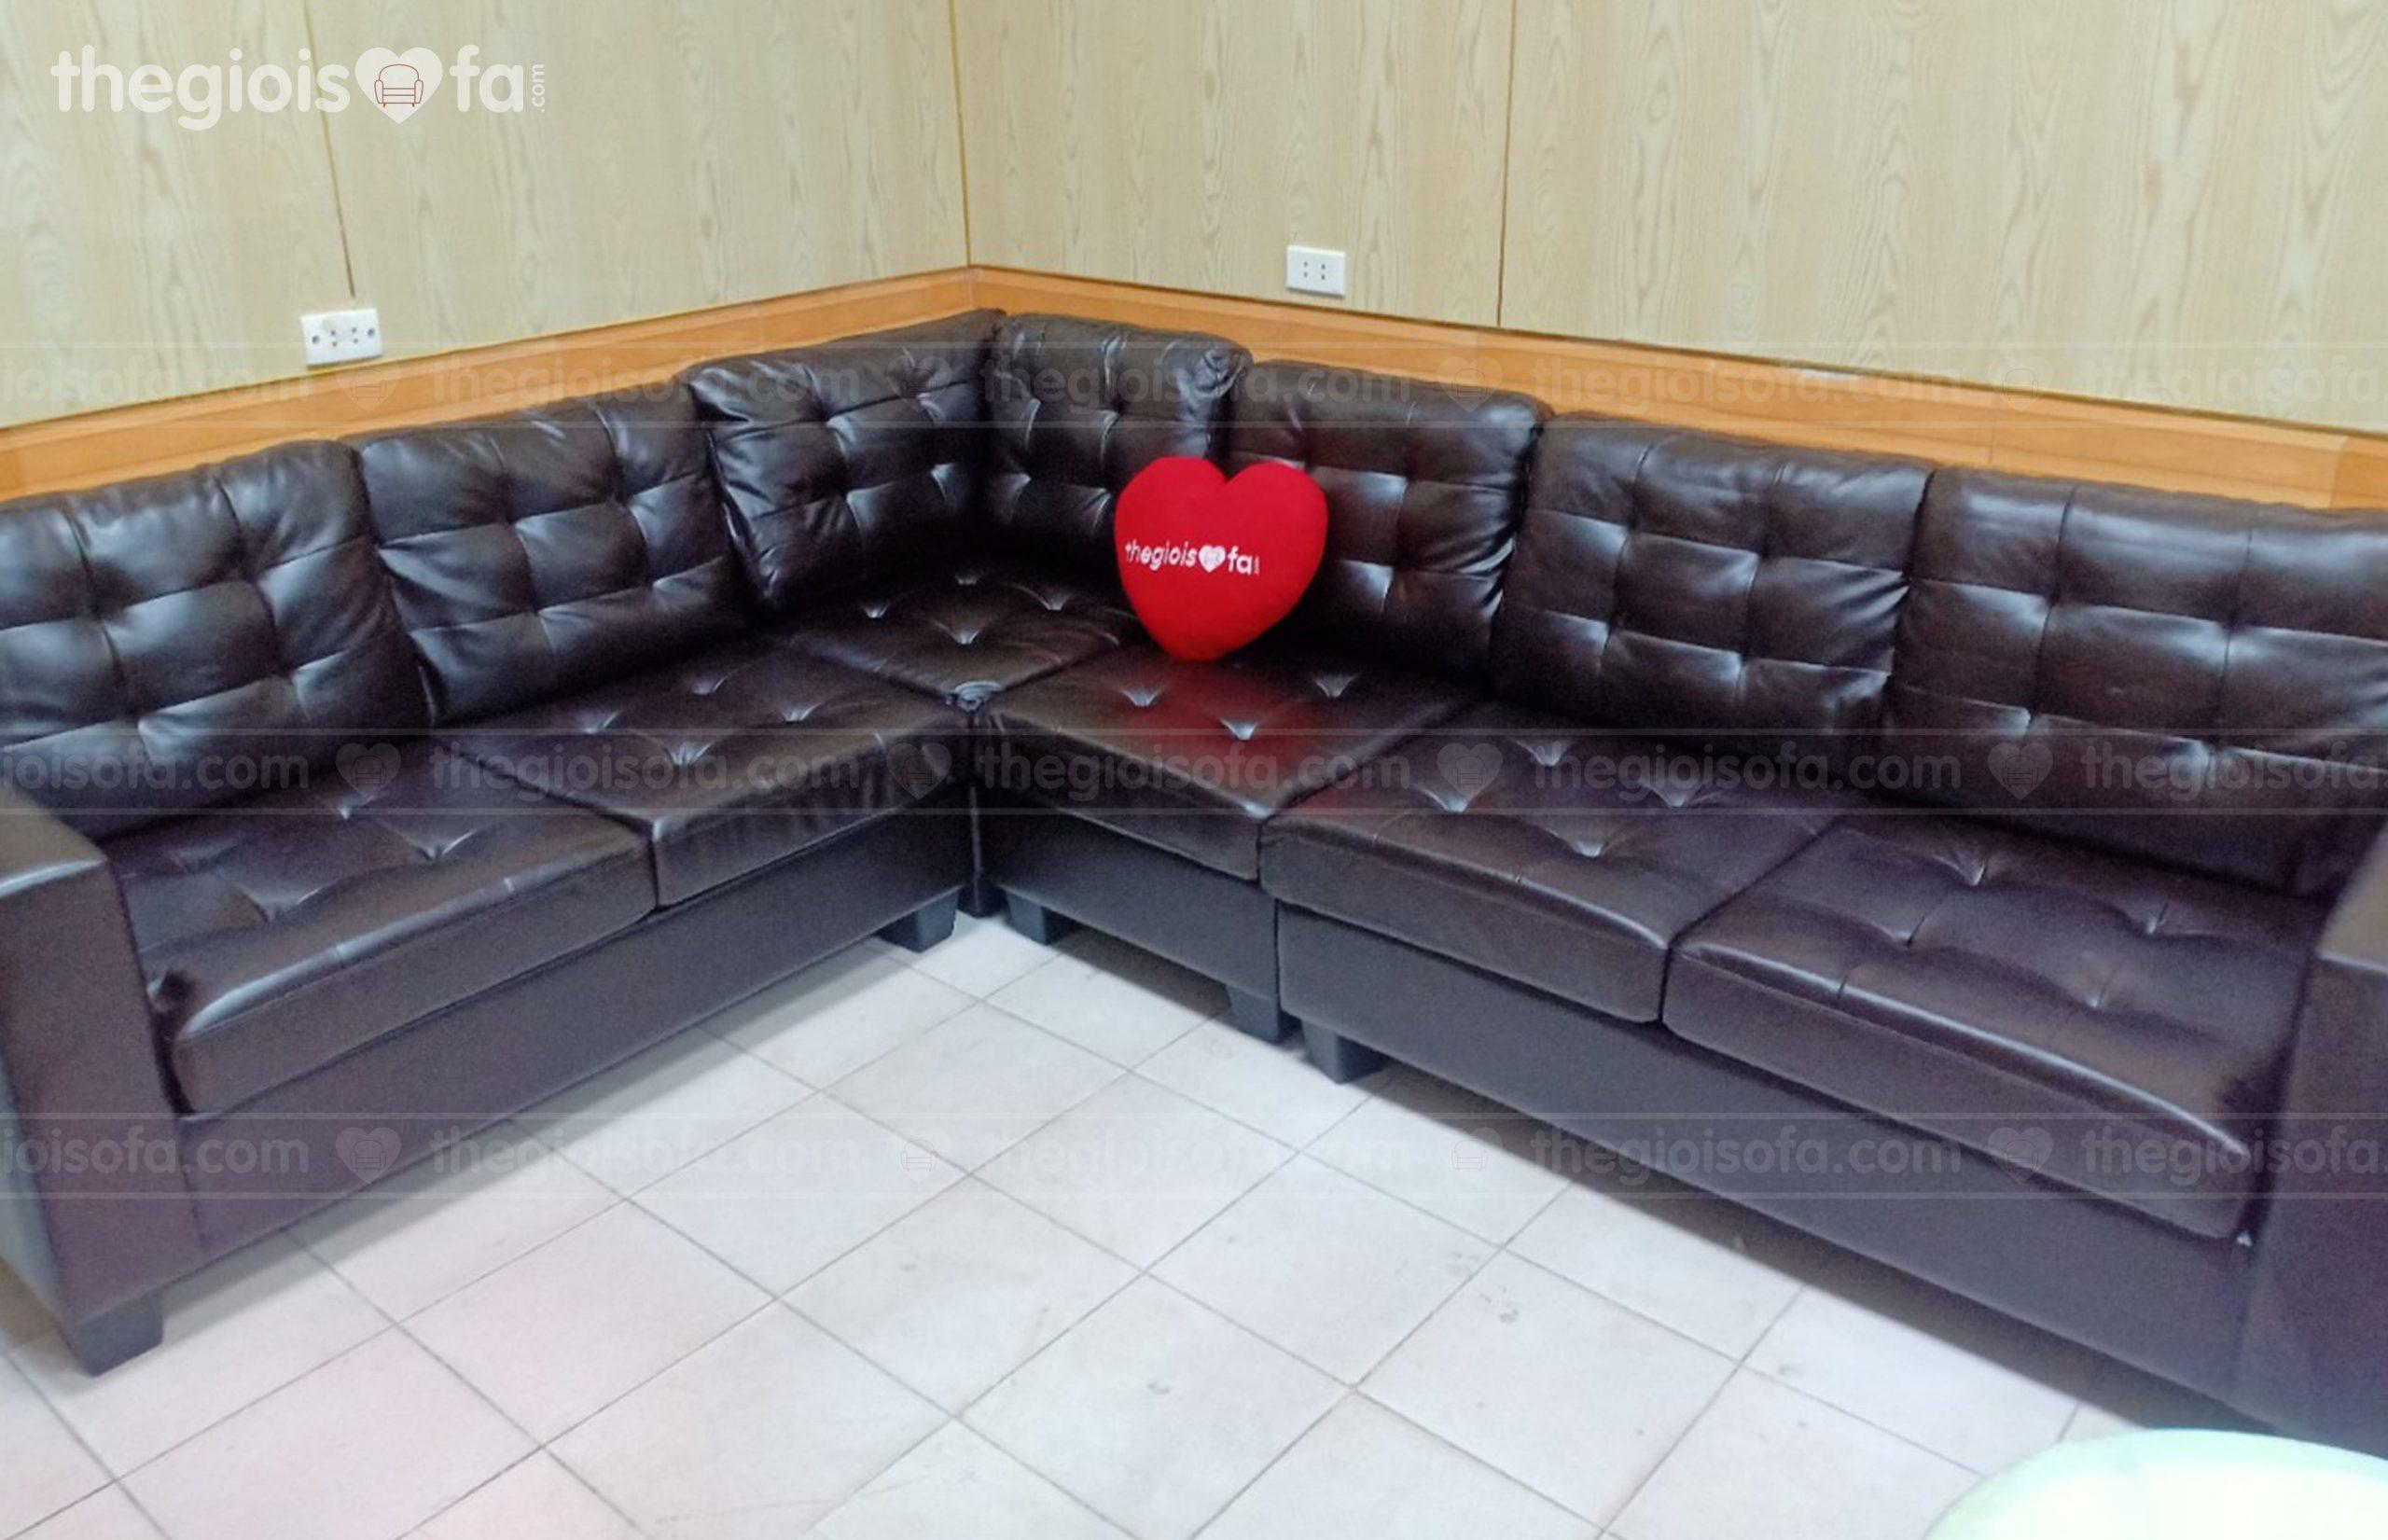 Giao hàng sofa góc da cao cấp Vista cho chị Thìn tại Ga Hà Nội – Quận Đống Đa